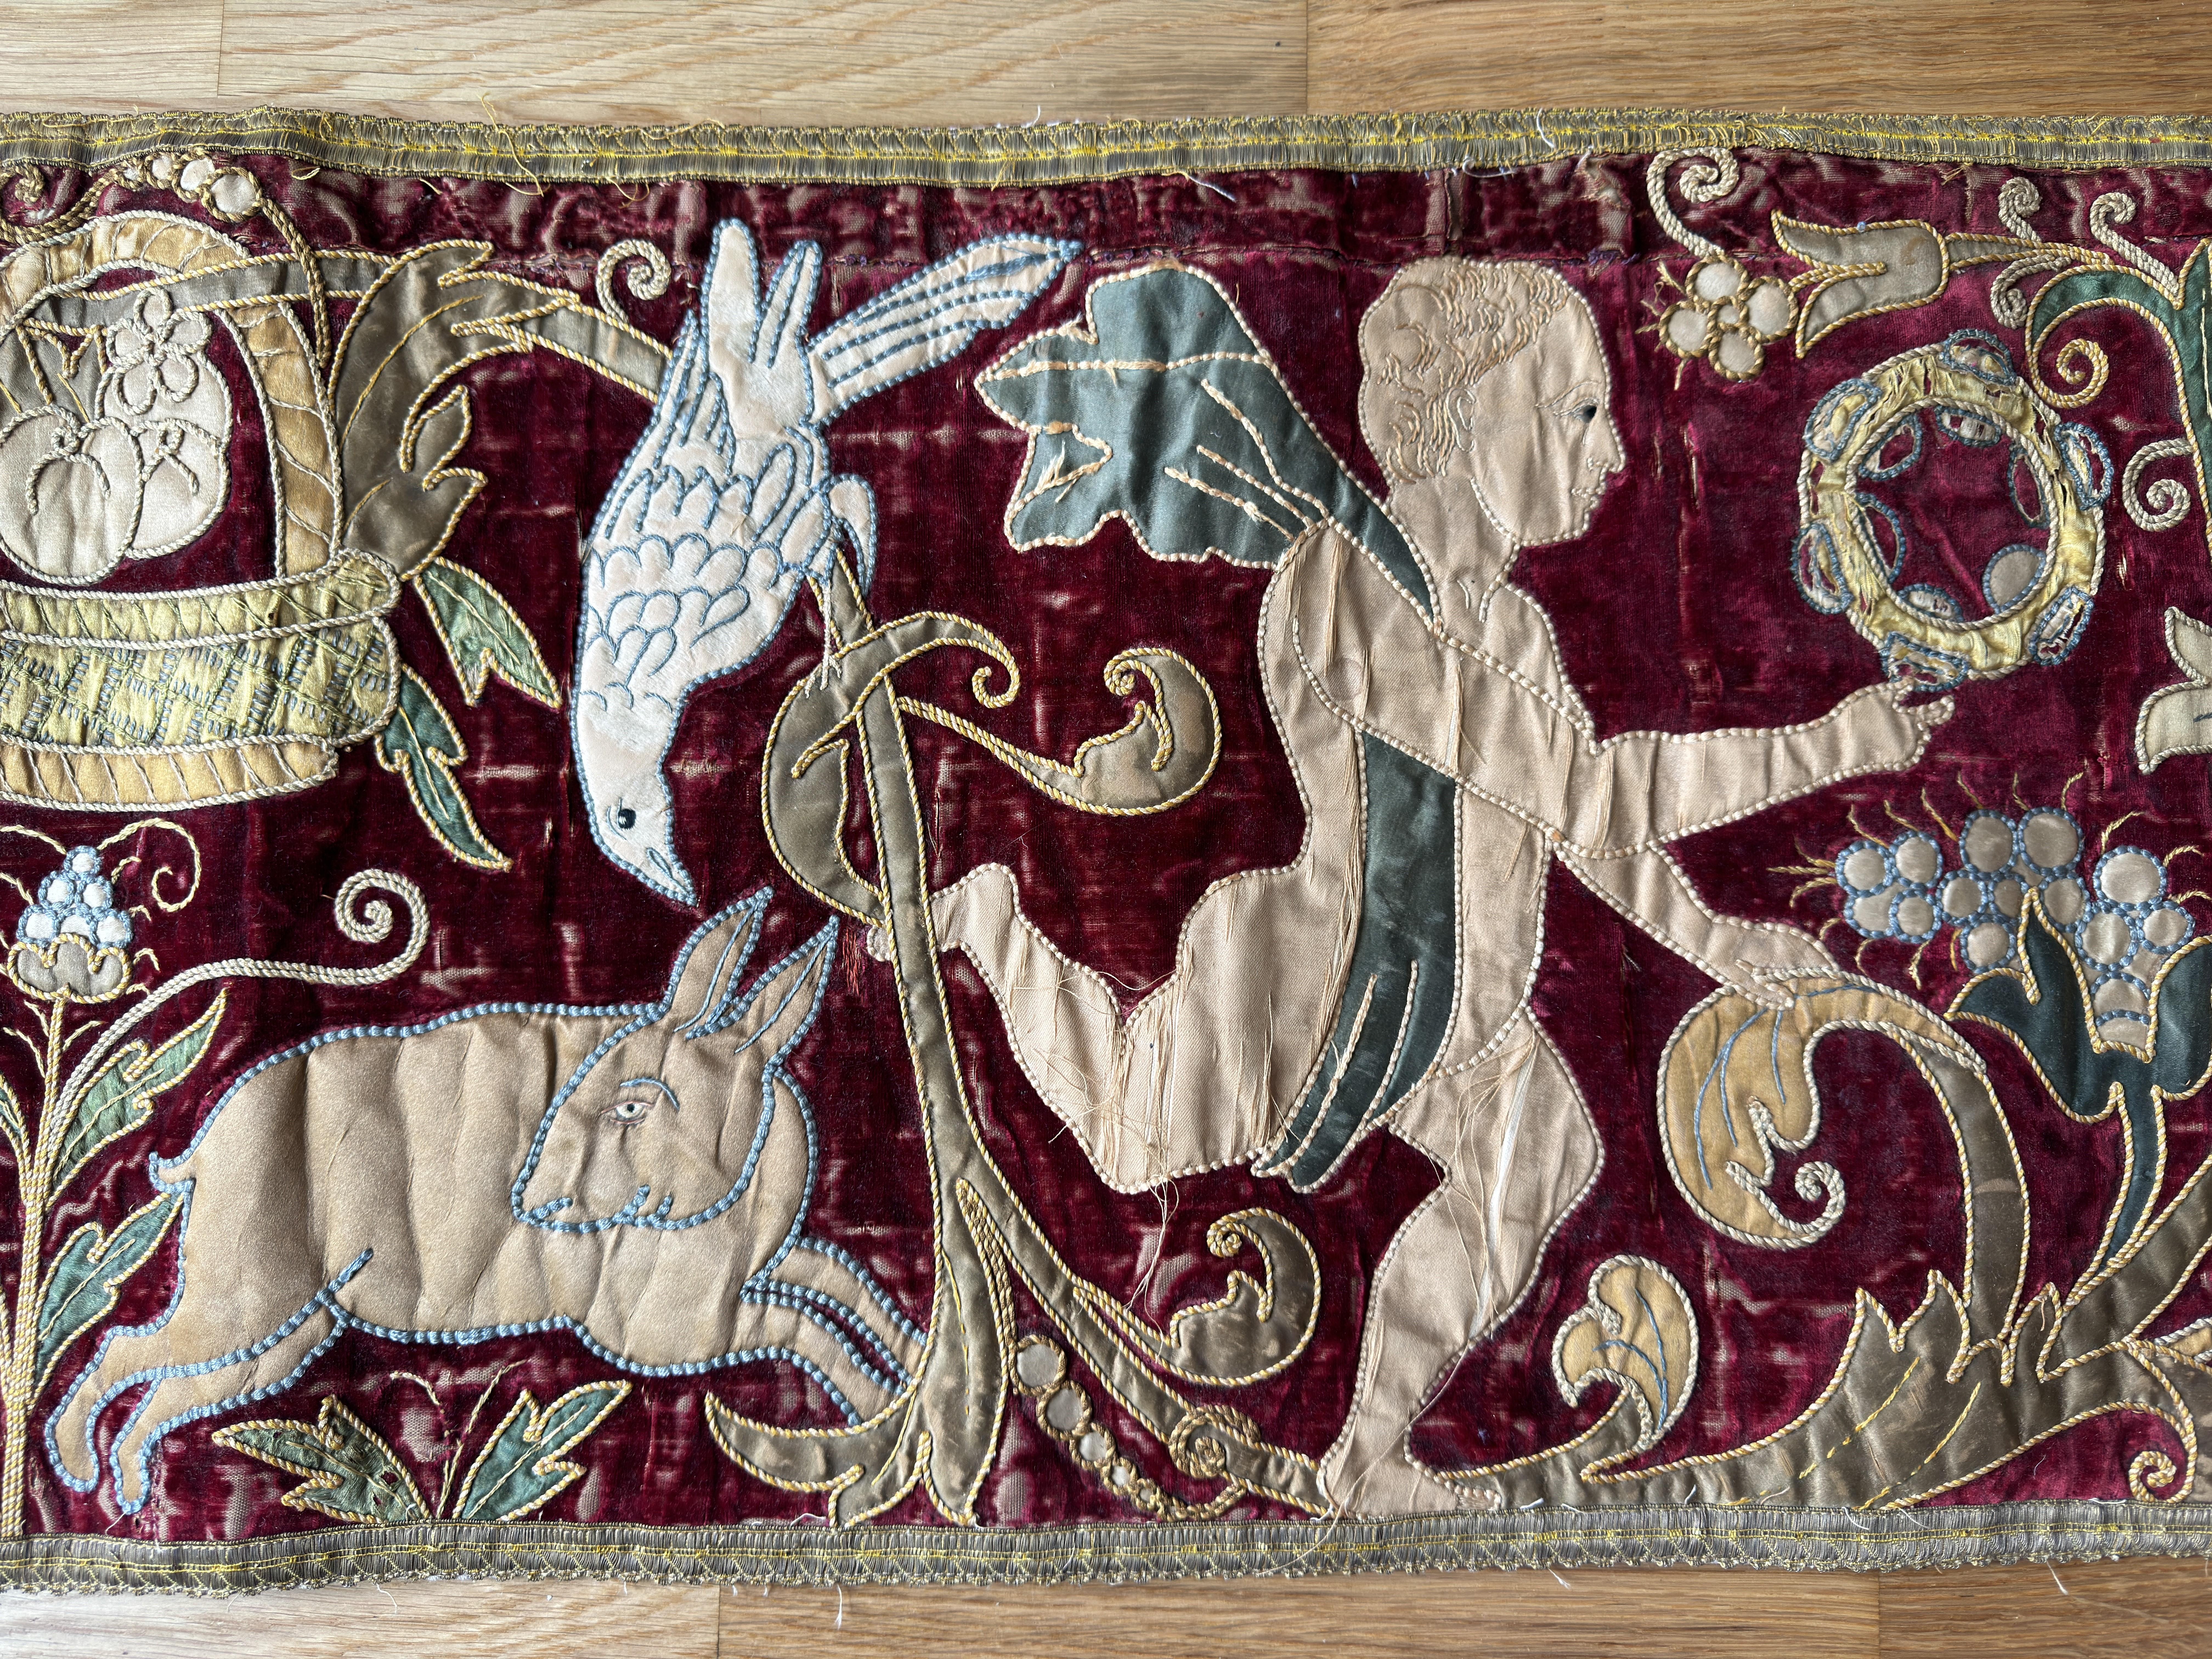 Ein feines Nadelbrett aus Seide und Samt aus dem 19. Jahrhundert, möglicherweise aus England. Die lange Tafel stellt Putti dar, die von Tieren und Vögeln umgeben ist. 

72 Zoll (183 cm) x 13 Zoll (34 cm).